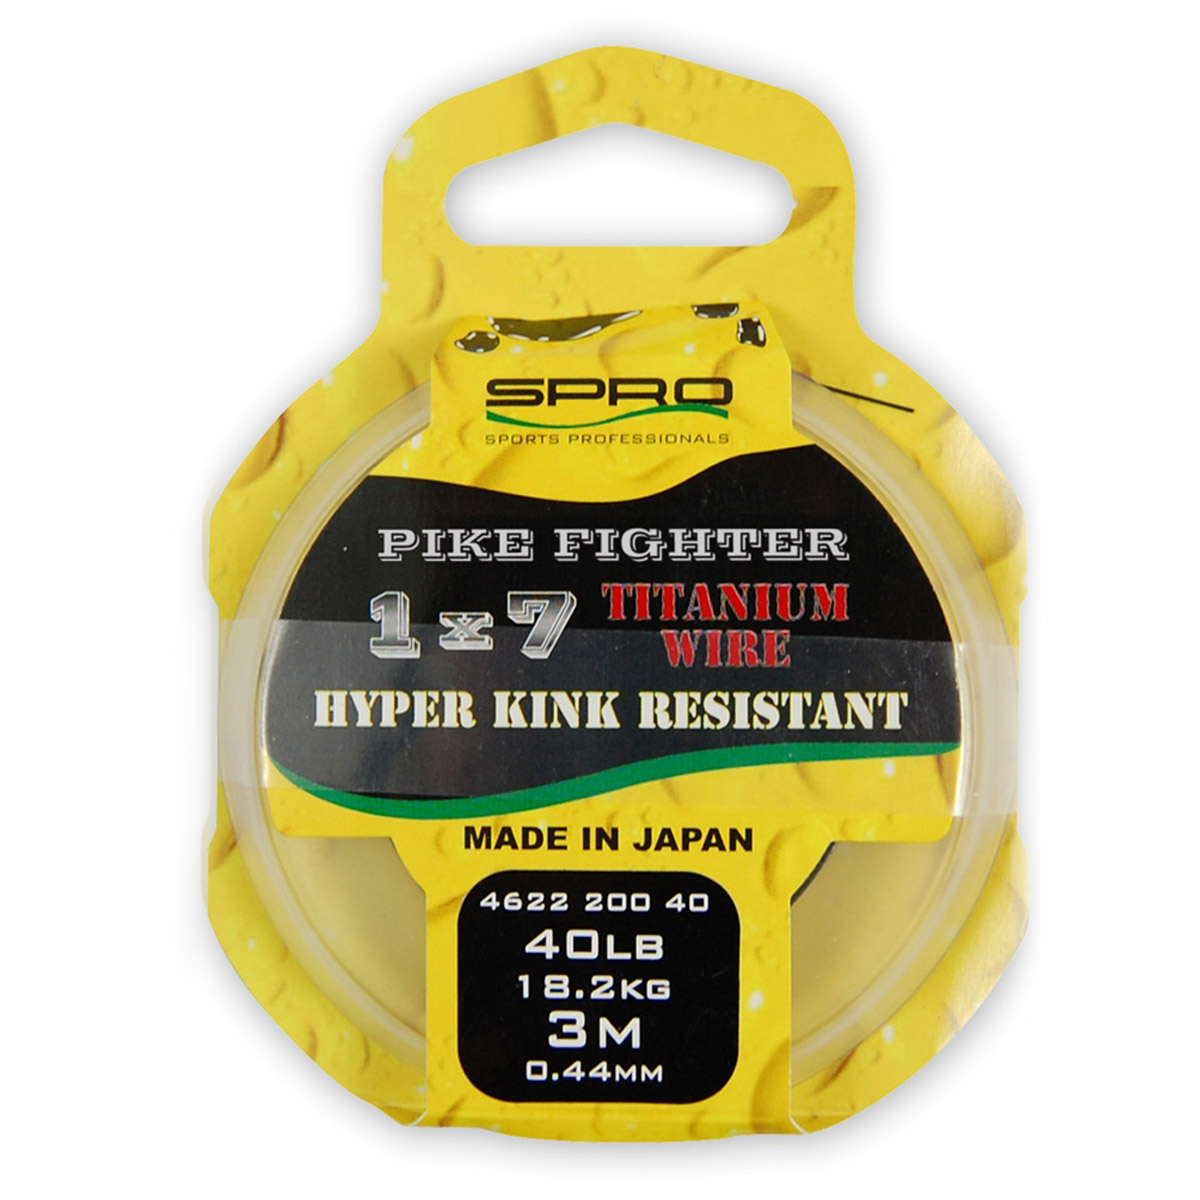 Spro Pike Fighter Titanium Wire